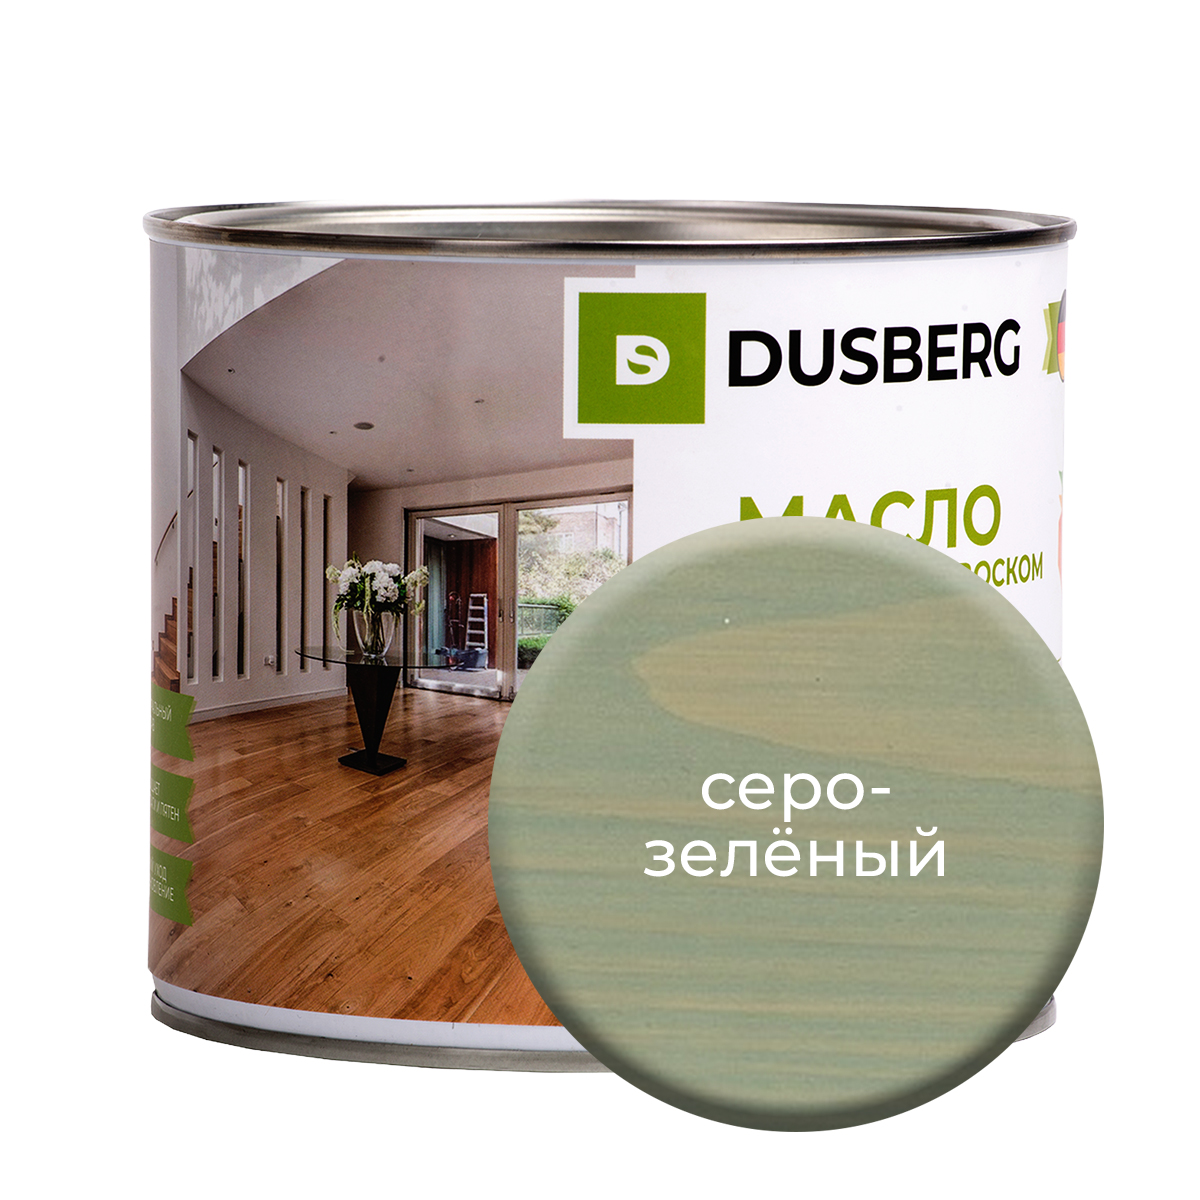 Масло Dusberg с твердым воском на бесцветной основе, 2 л Серо-зеленый масло dusberg с твердым воском на бесцветной основе 750 мл темный серо зеленый